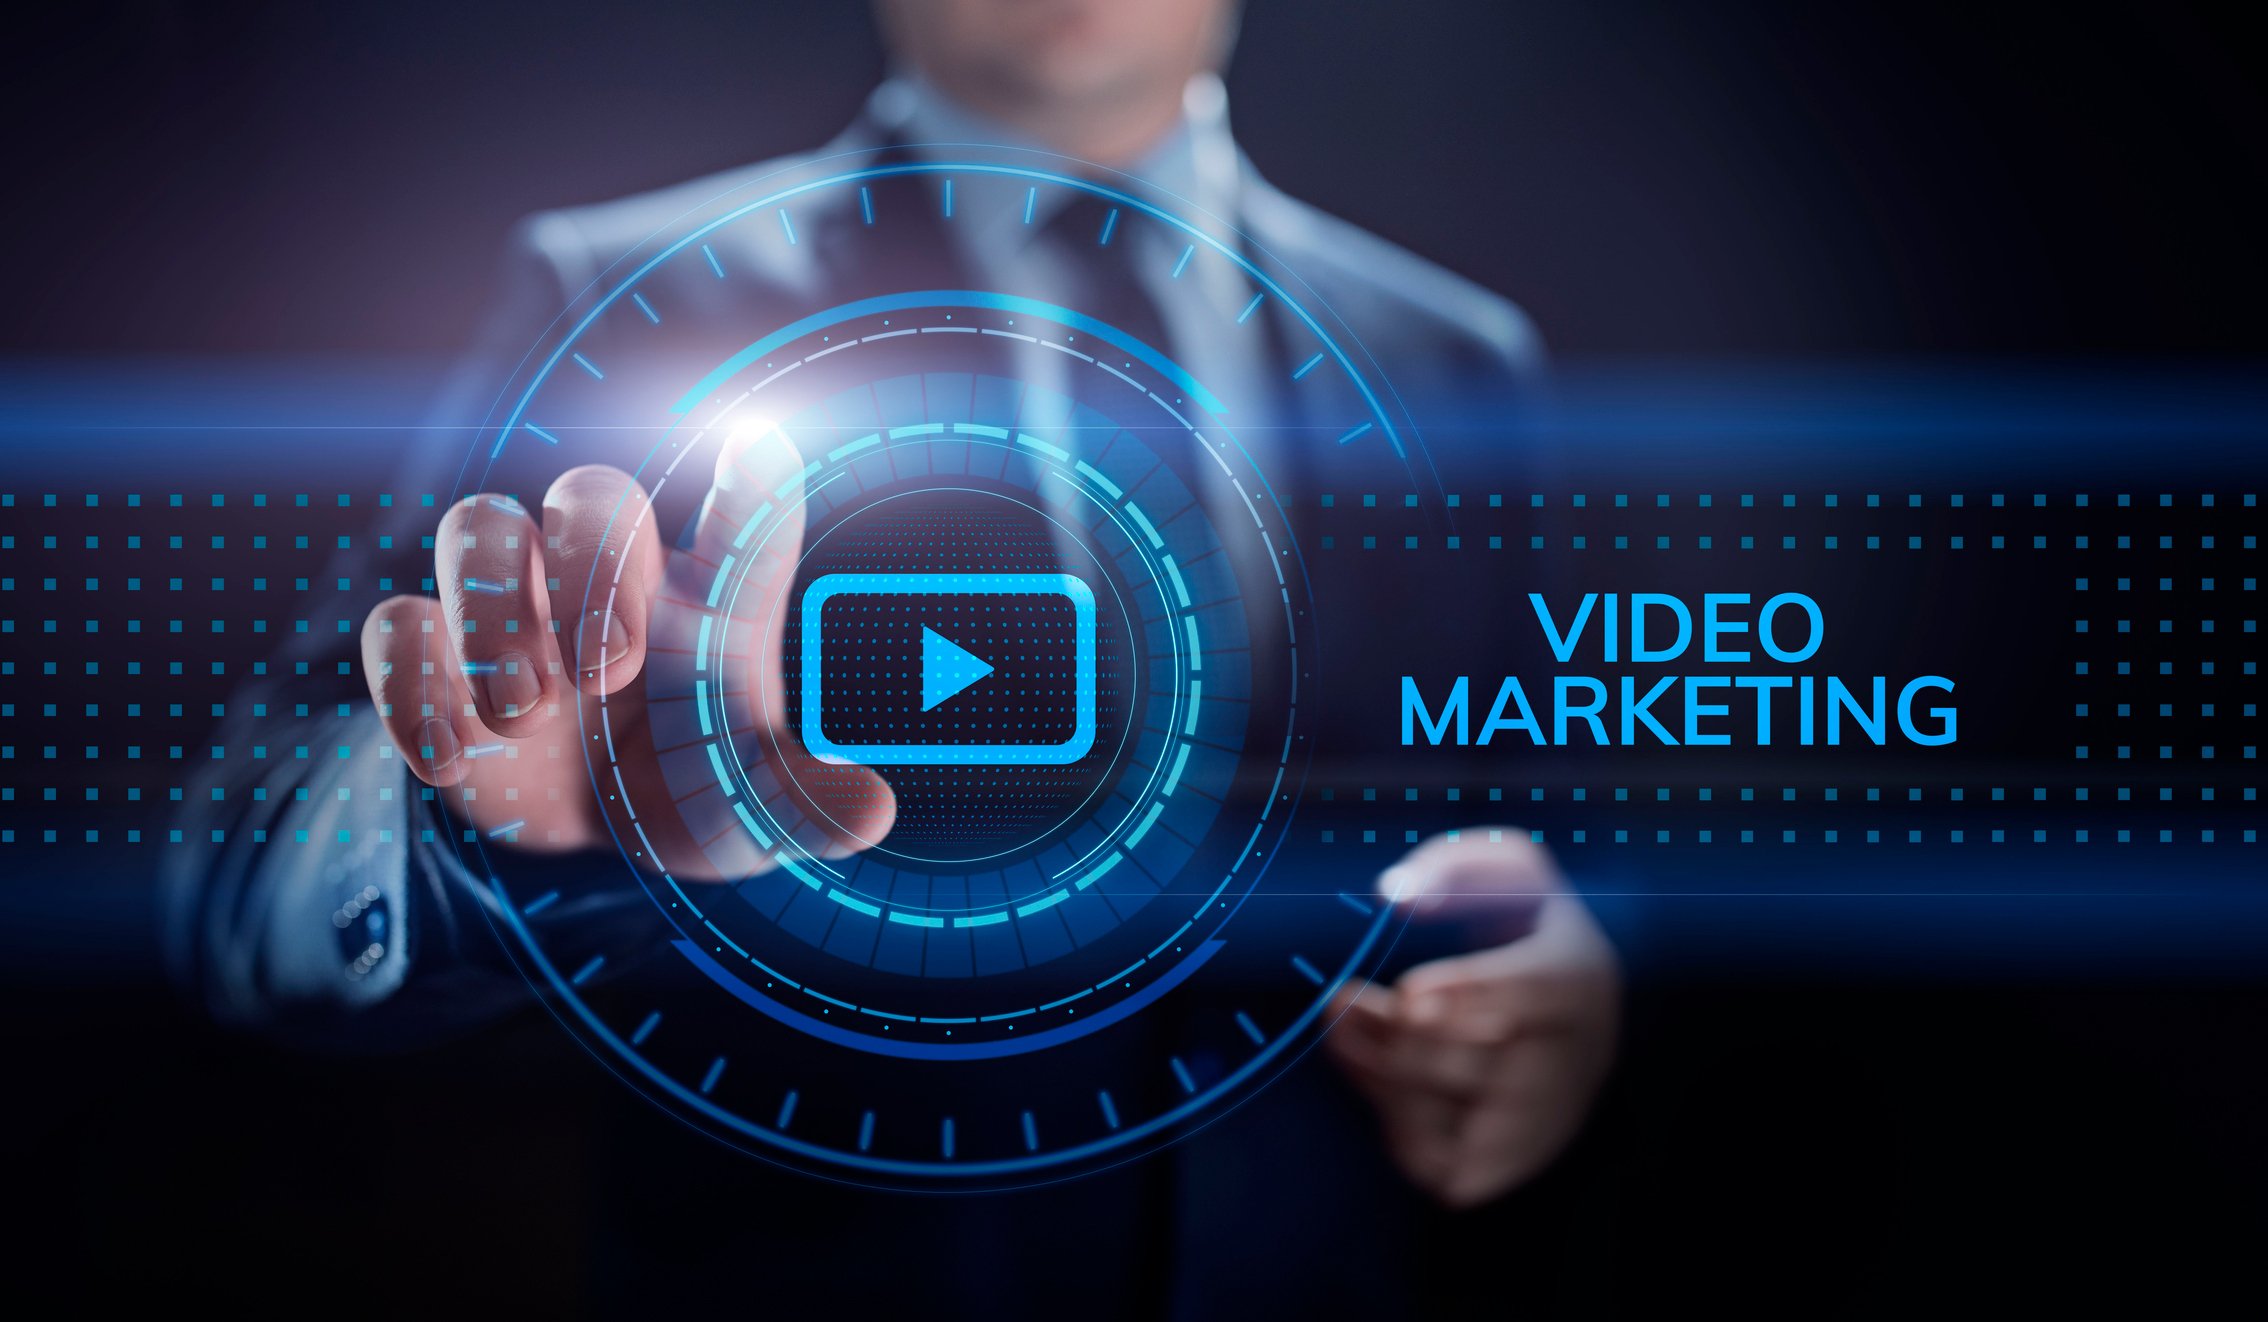 El vídeo marketing, es una tendencia de mercado que puede ser una de las formas más eficaces de aumentar el reconocimiento de la marca